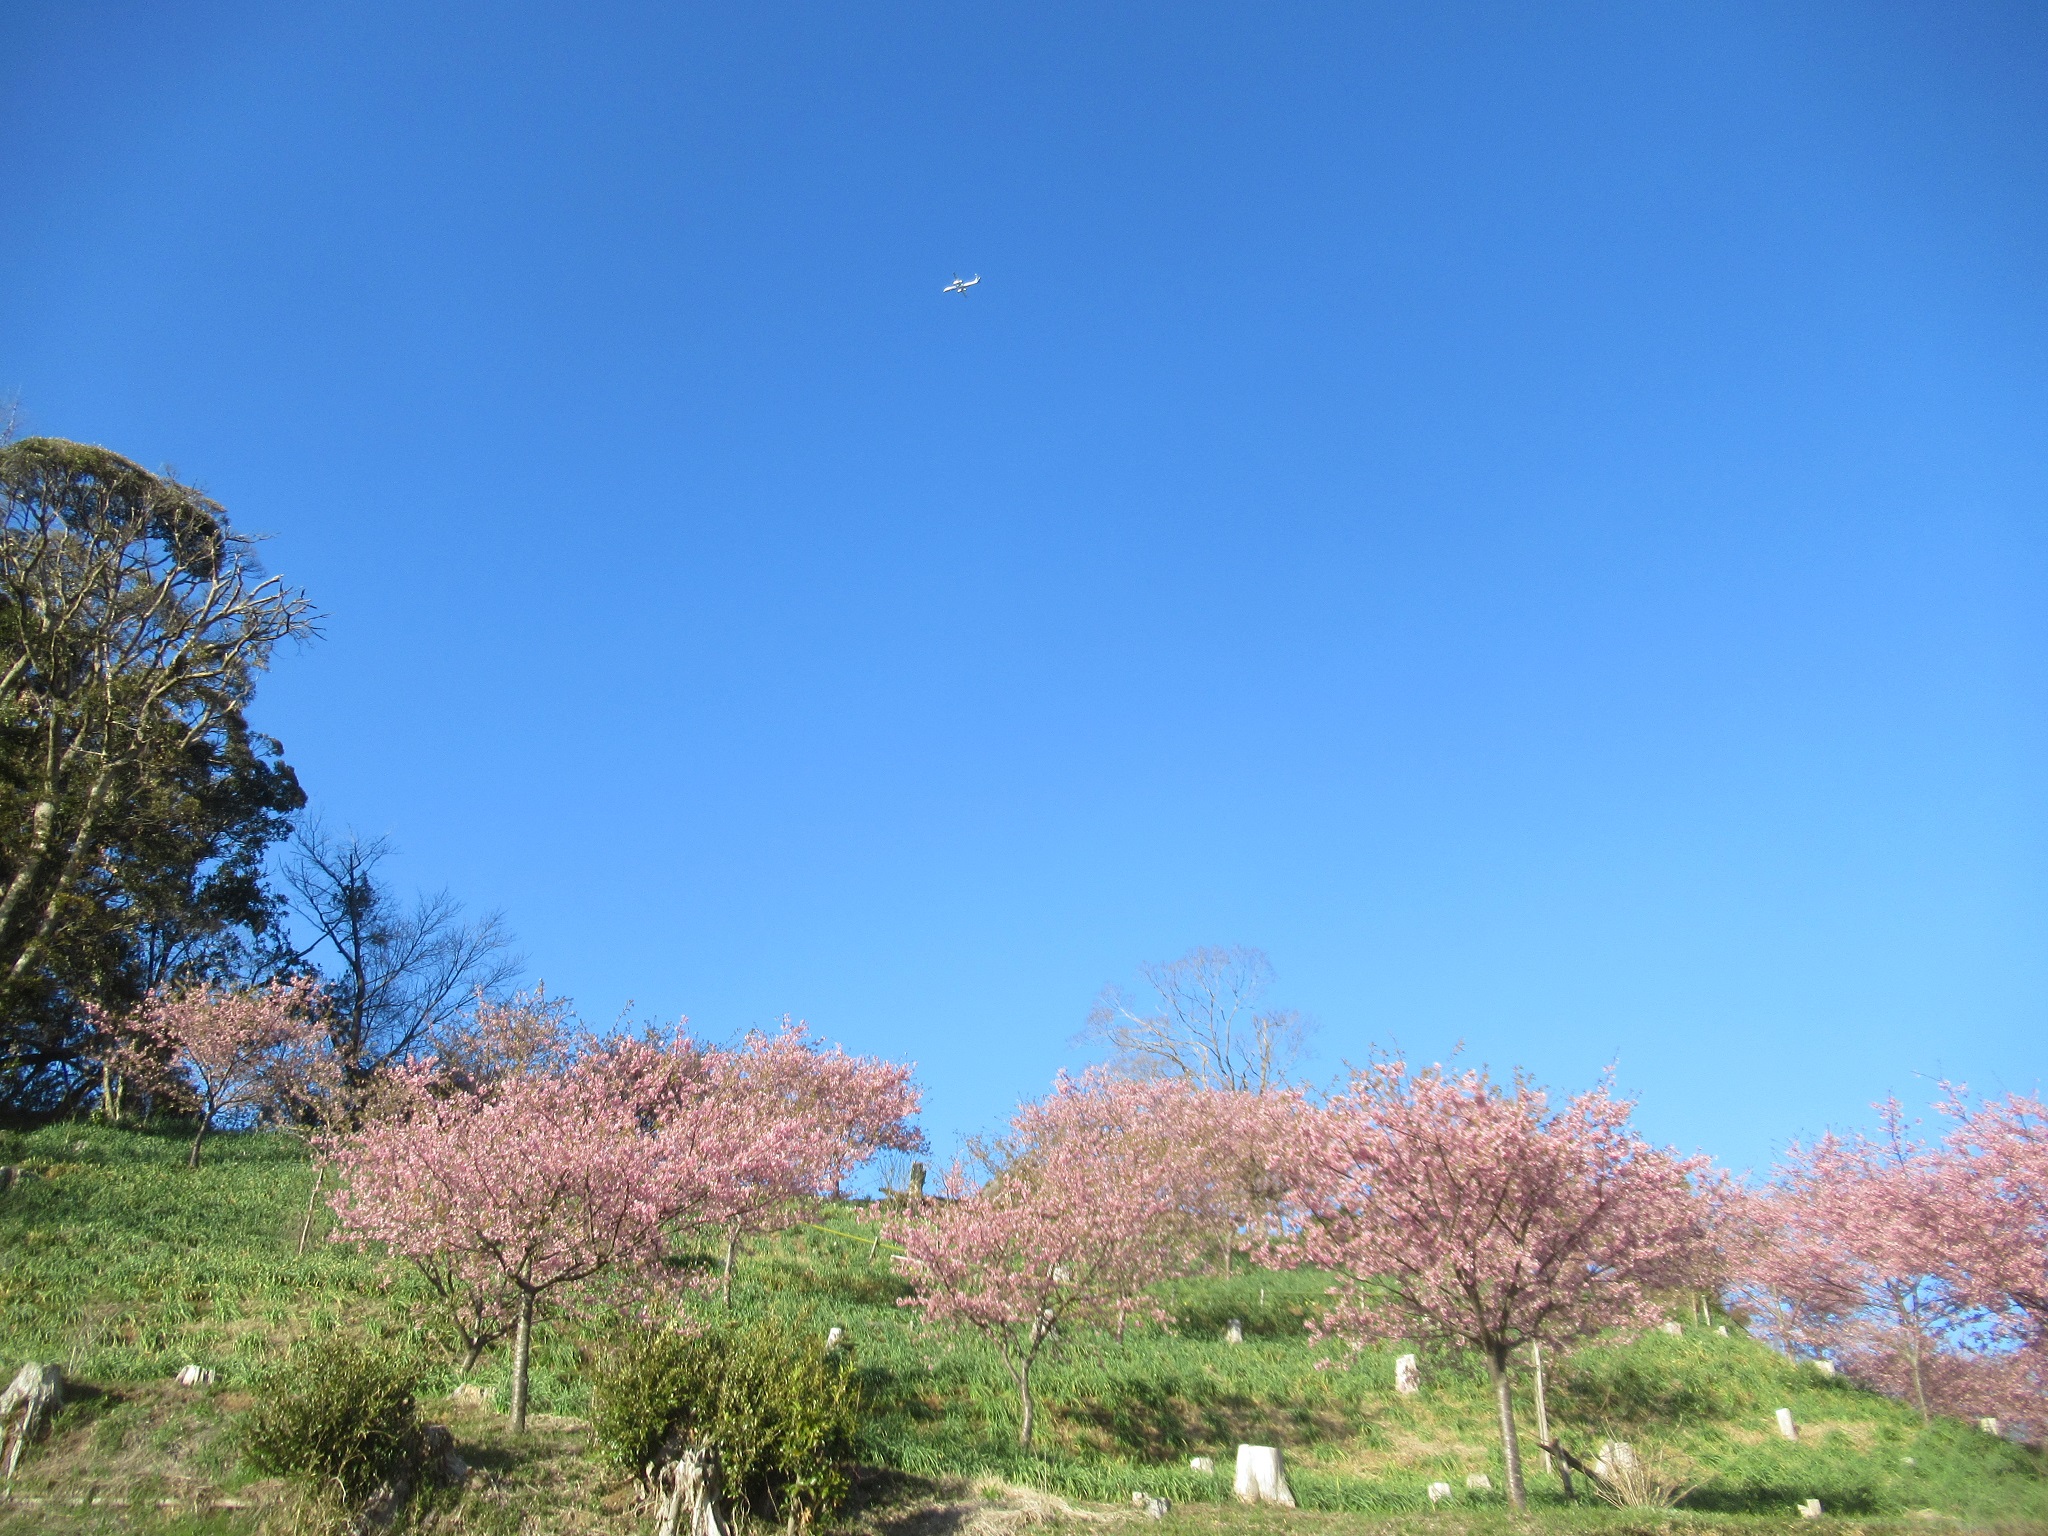 取香川散策路から望む里山の景観写真1